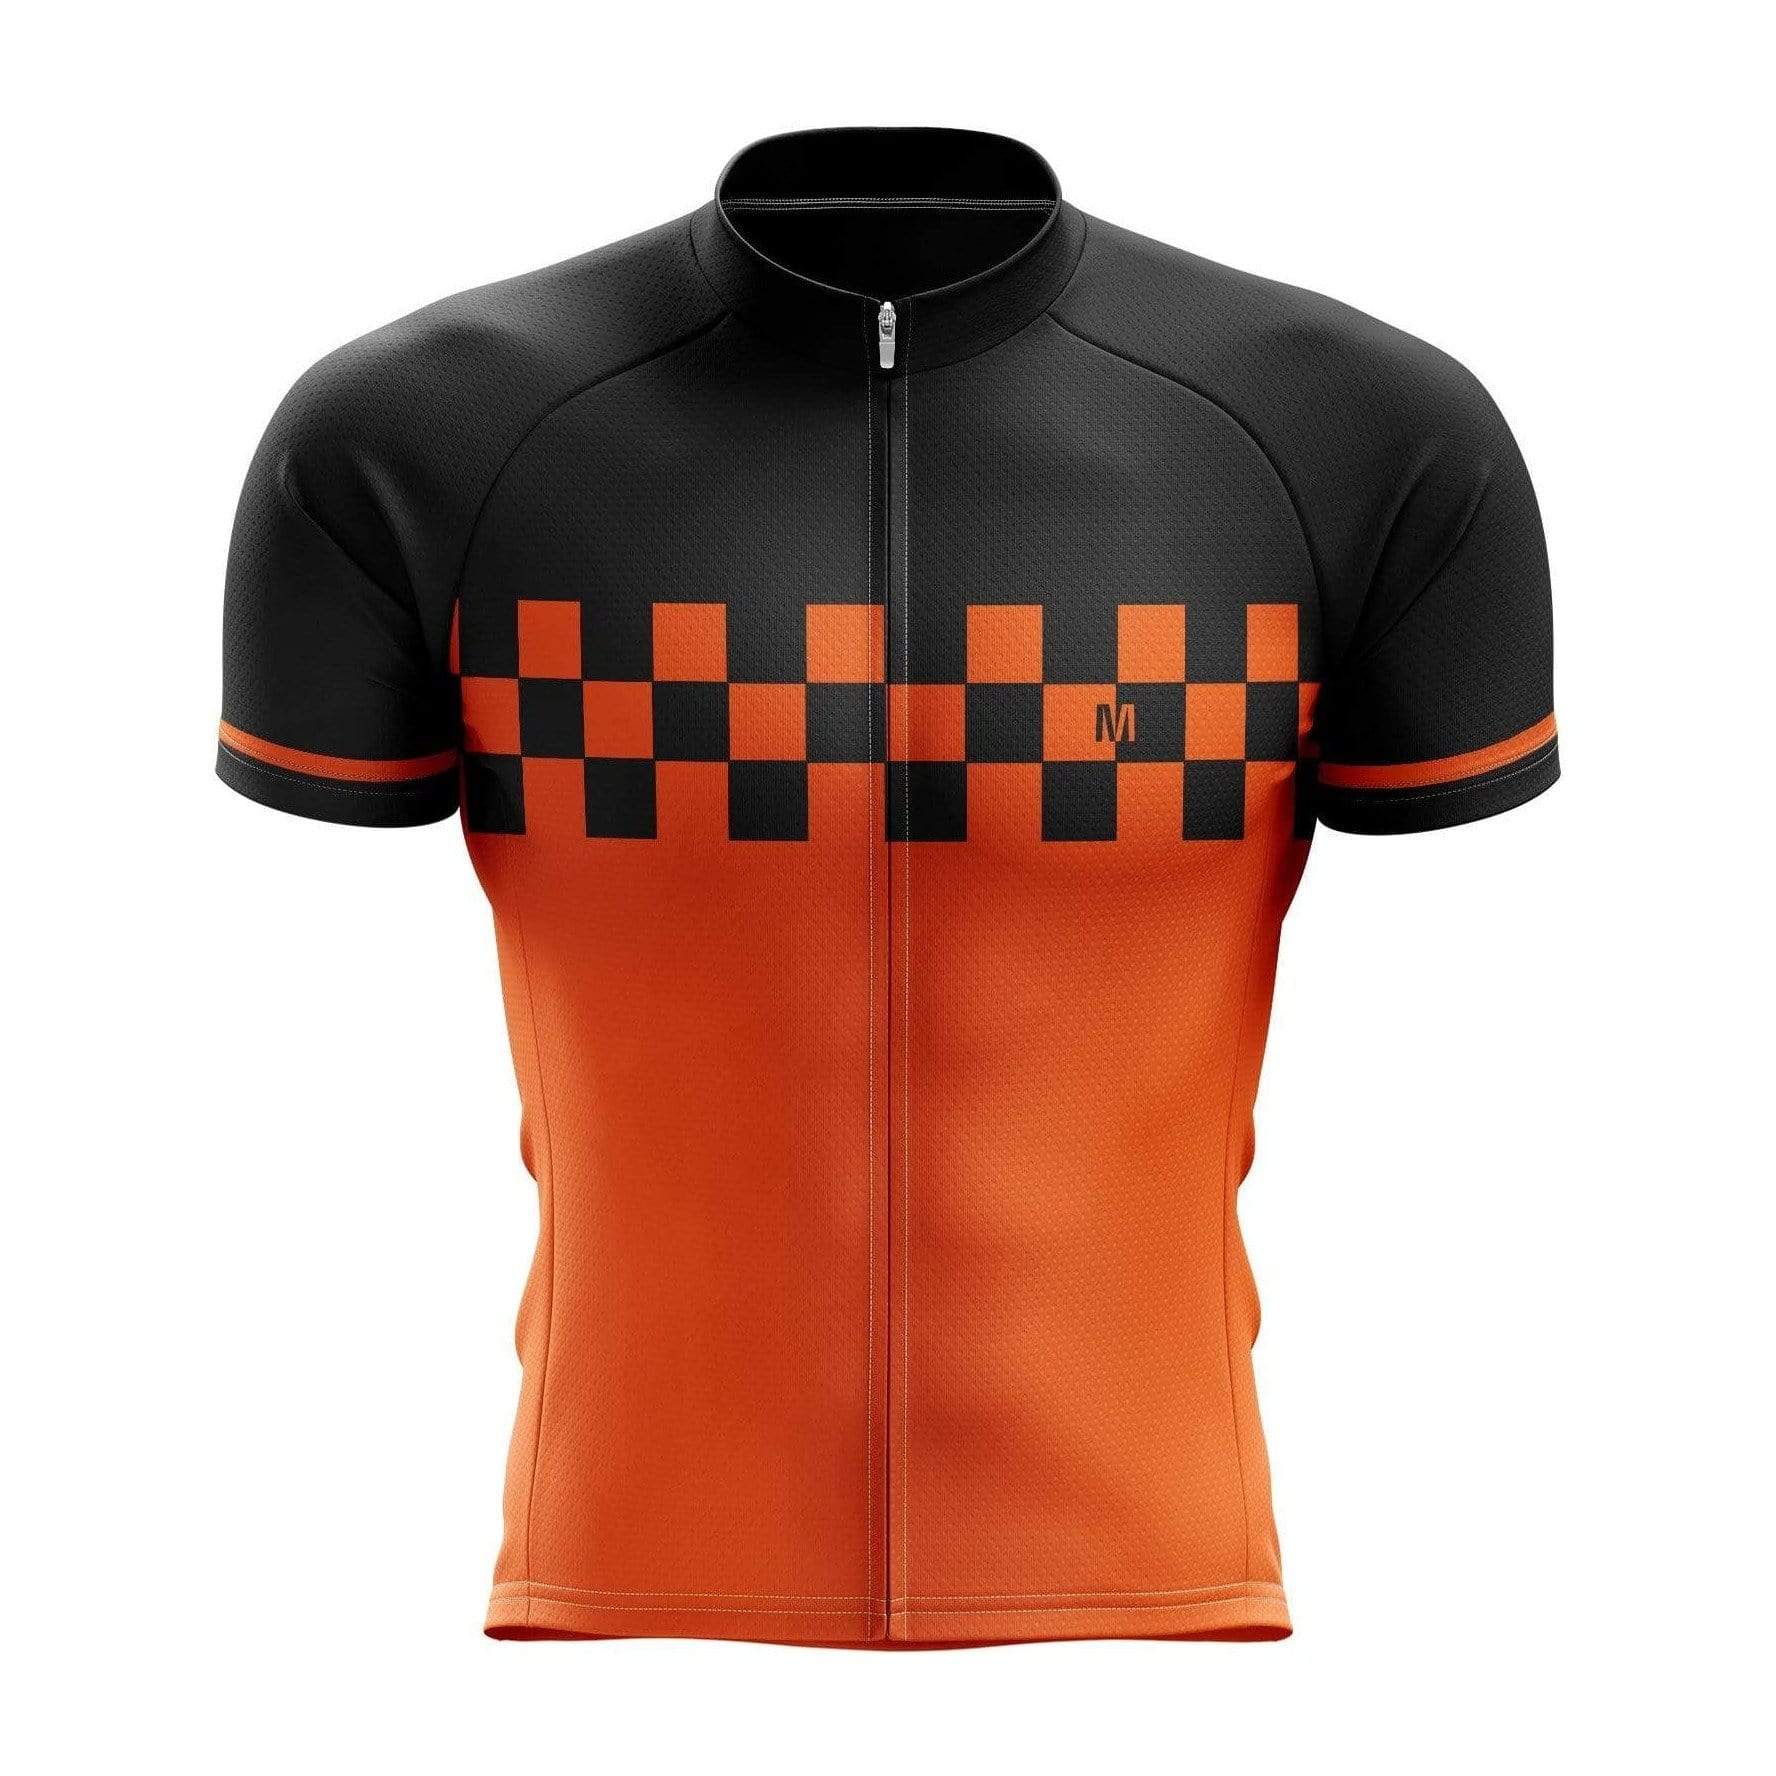 Men's Orange Speed Cycling Jersey or Bib Shorts – Montella Cycling